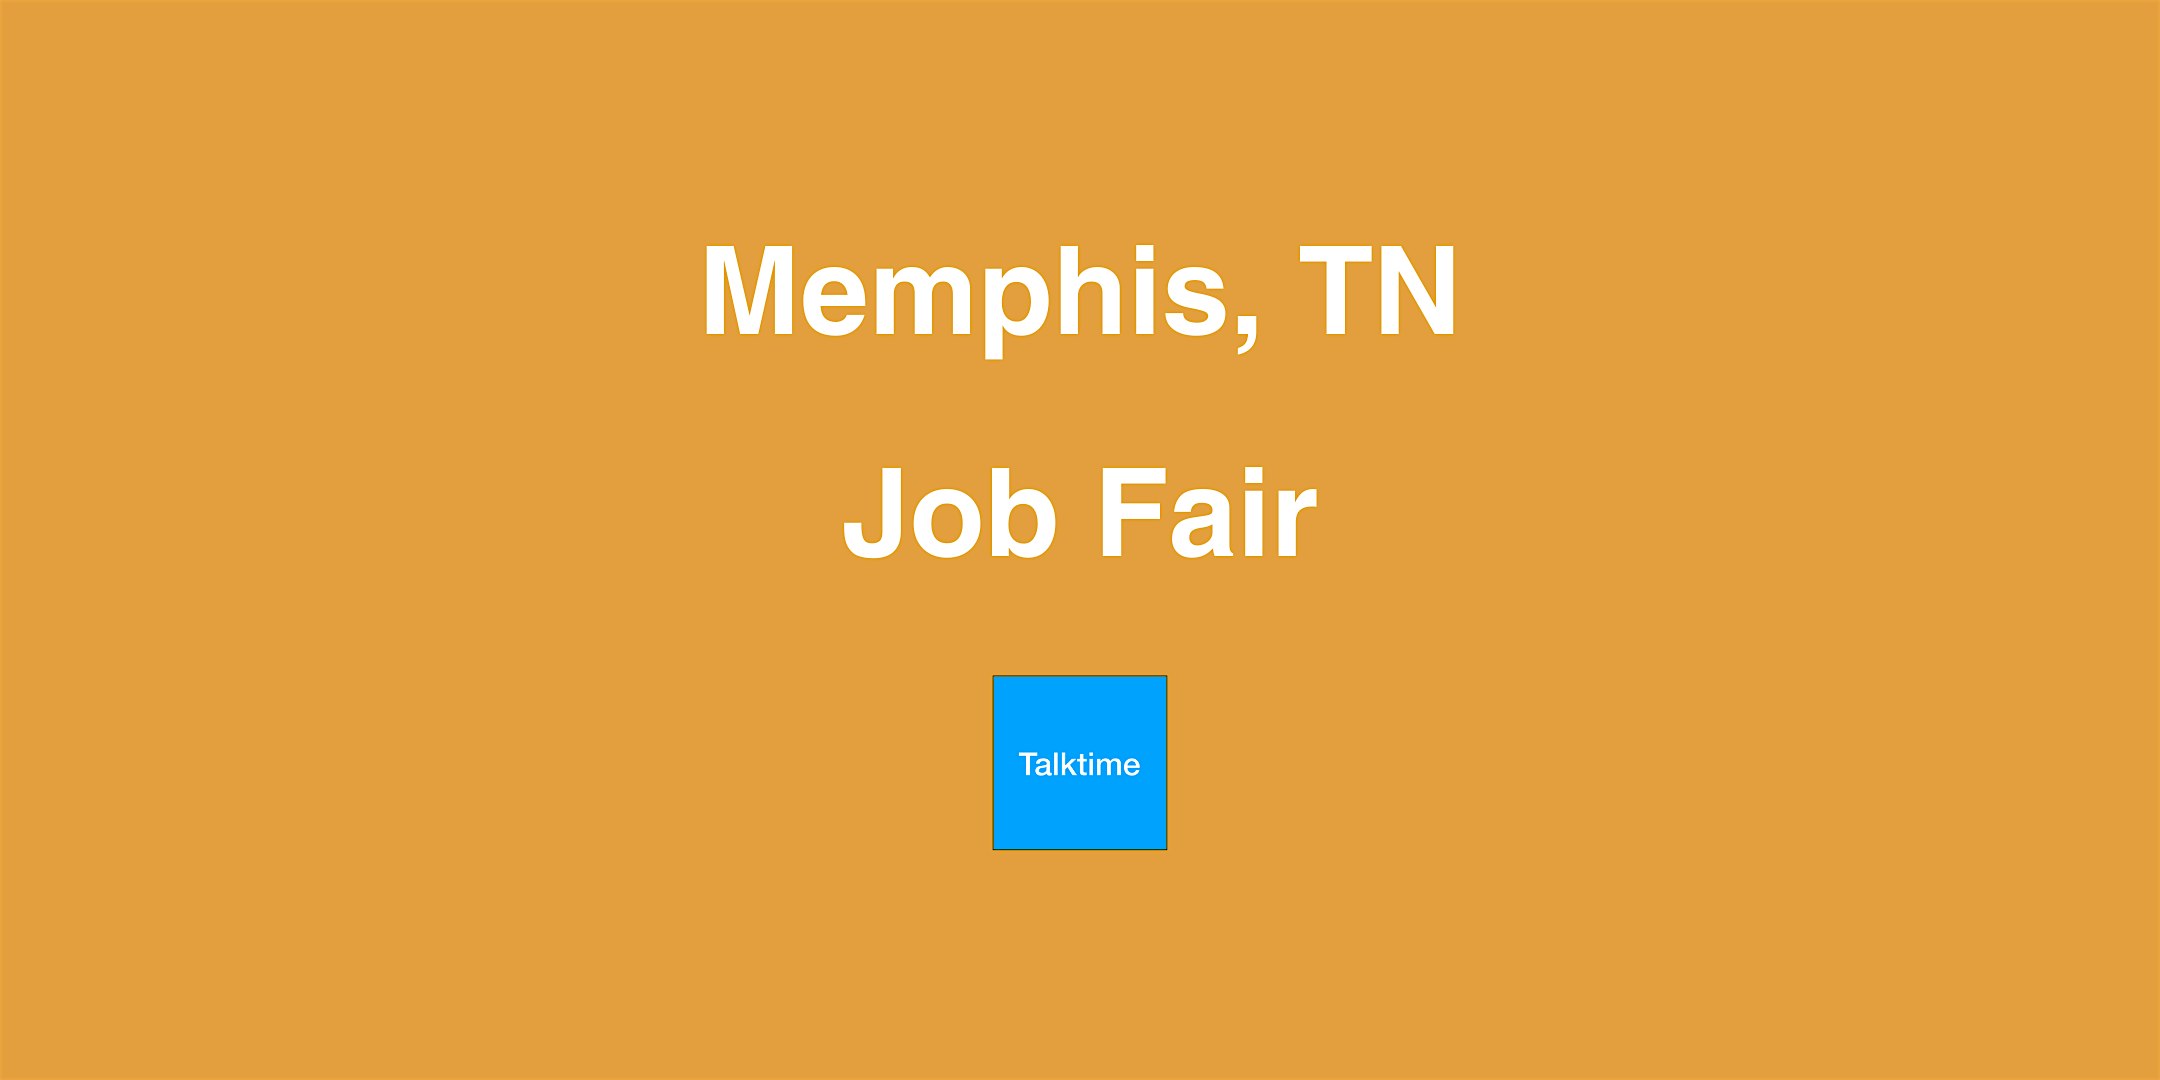 Job Fair - Memphis